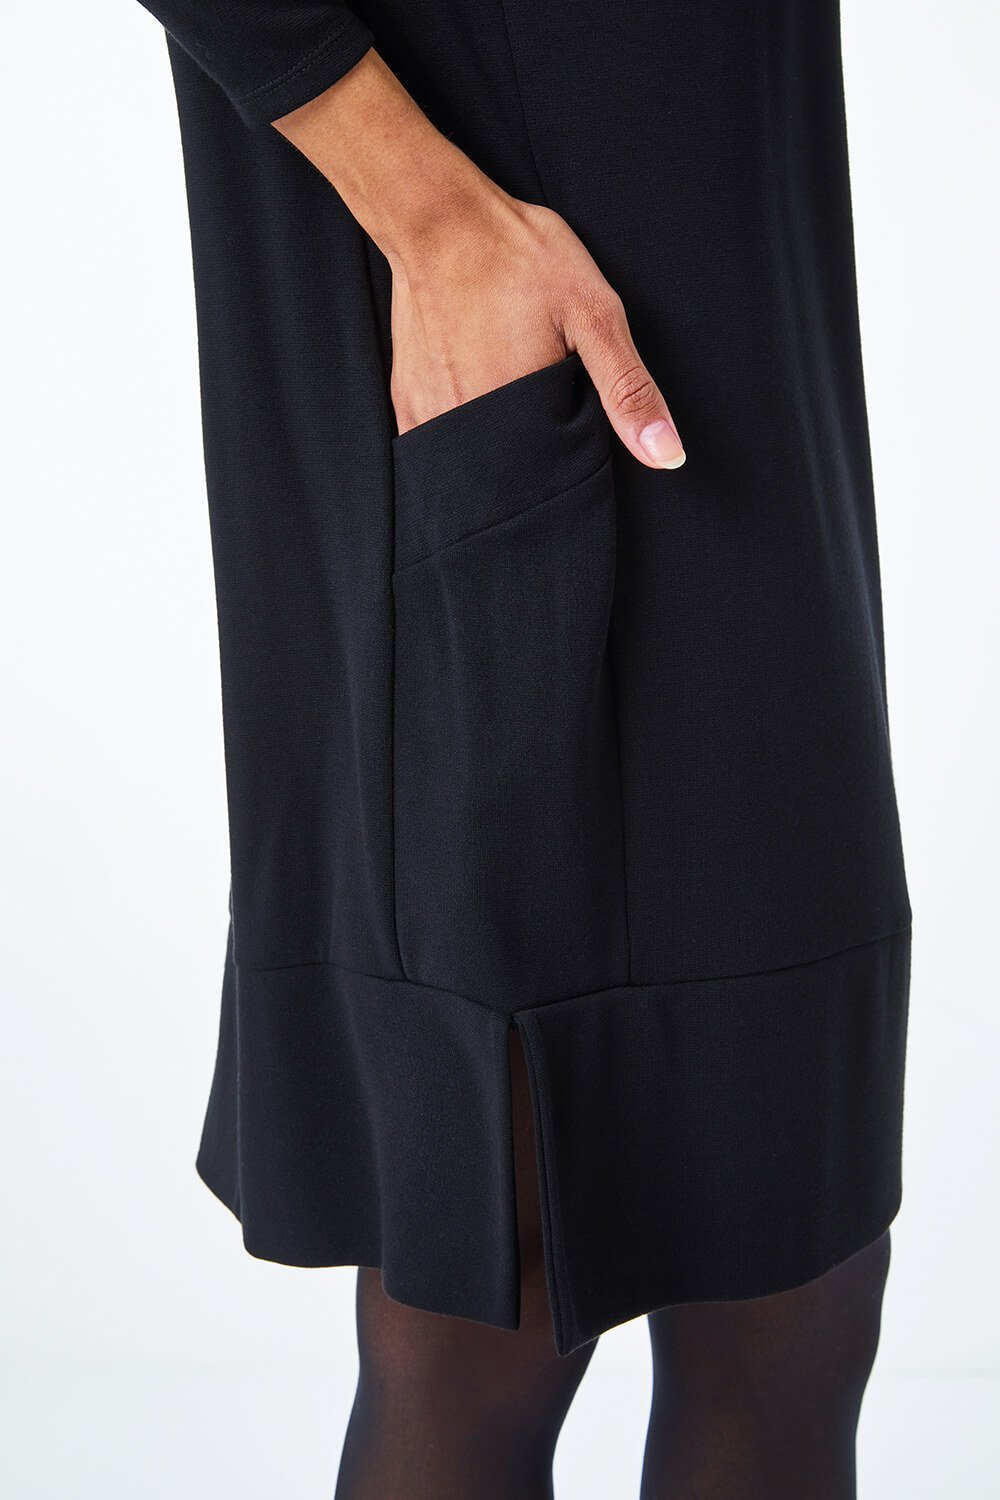 Black Oversized Tunic Pocket Dress, Image 5 of 5